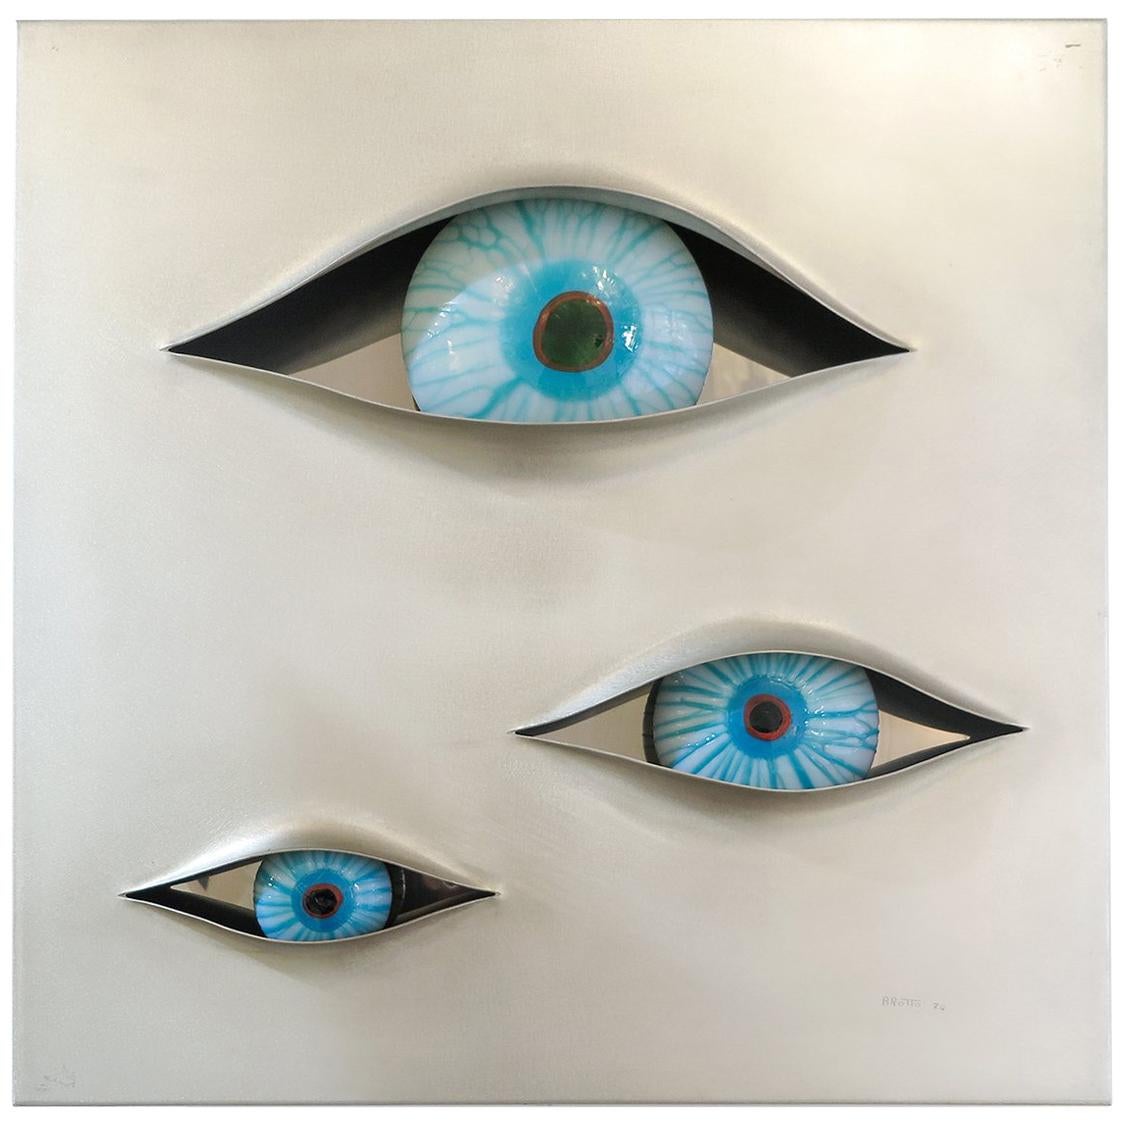 Angelo Brotto " Malizia " Illuminated Wall Panel with 3 Eyes